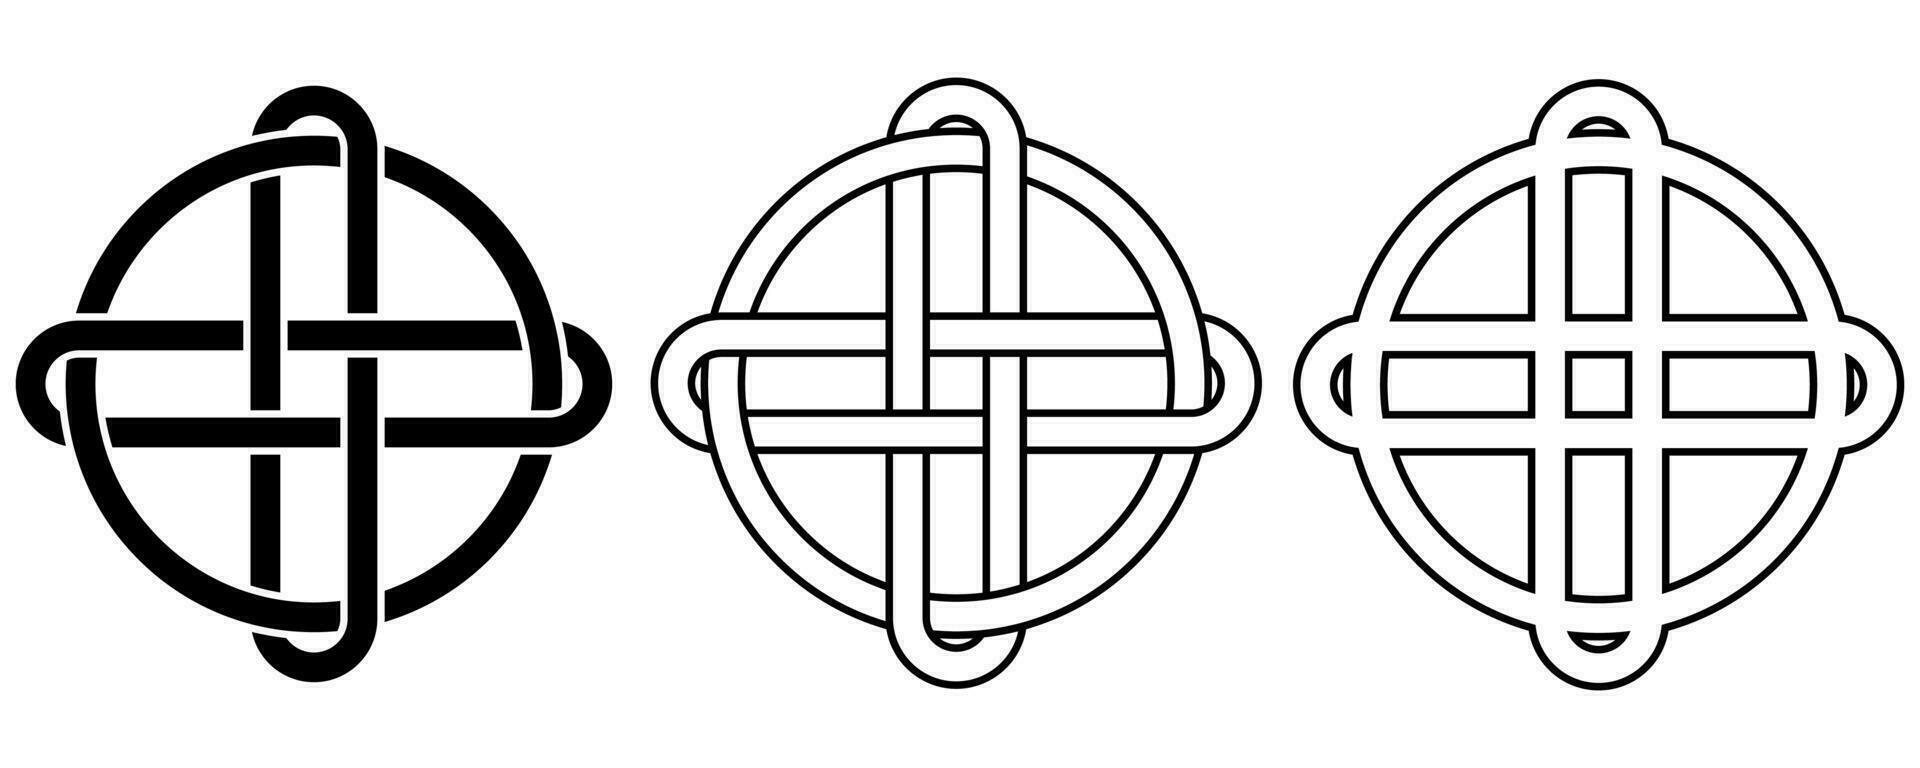 Gliederung Kreis Kreuz keltisch Knoten Zeichen vektor